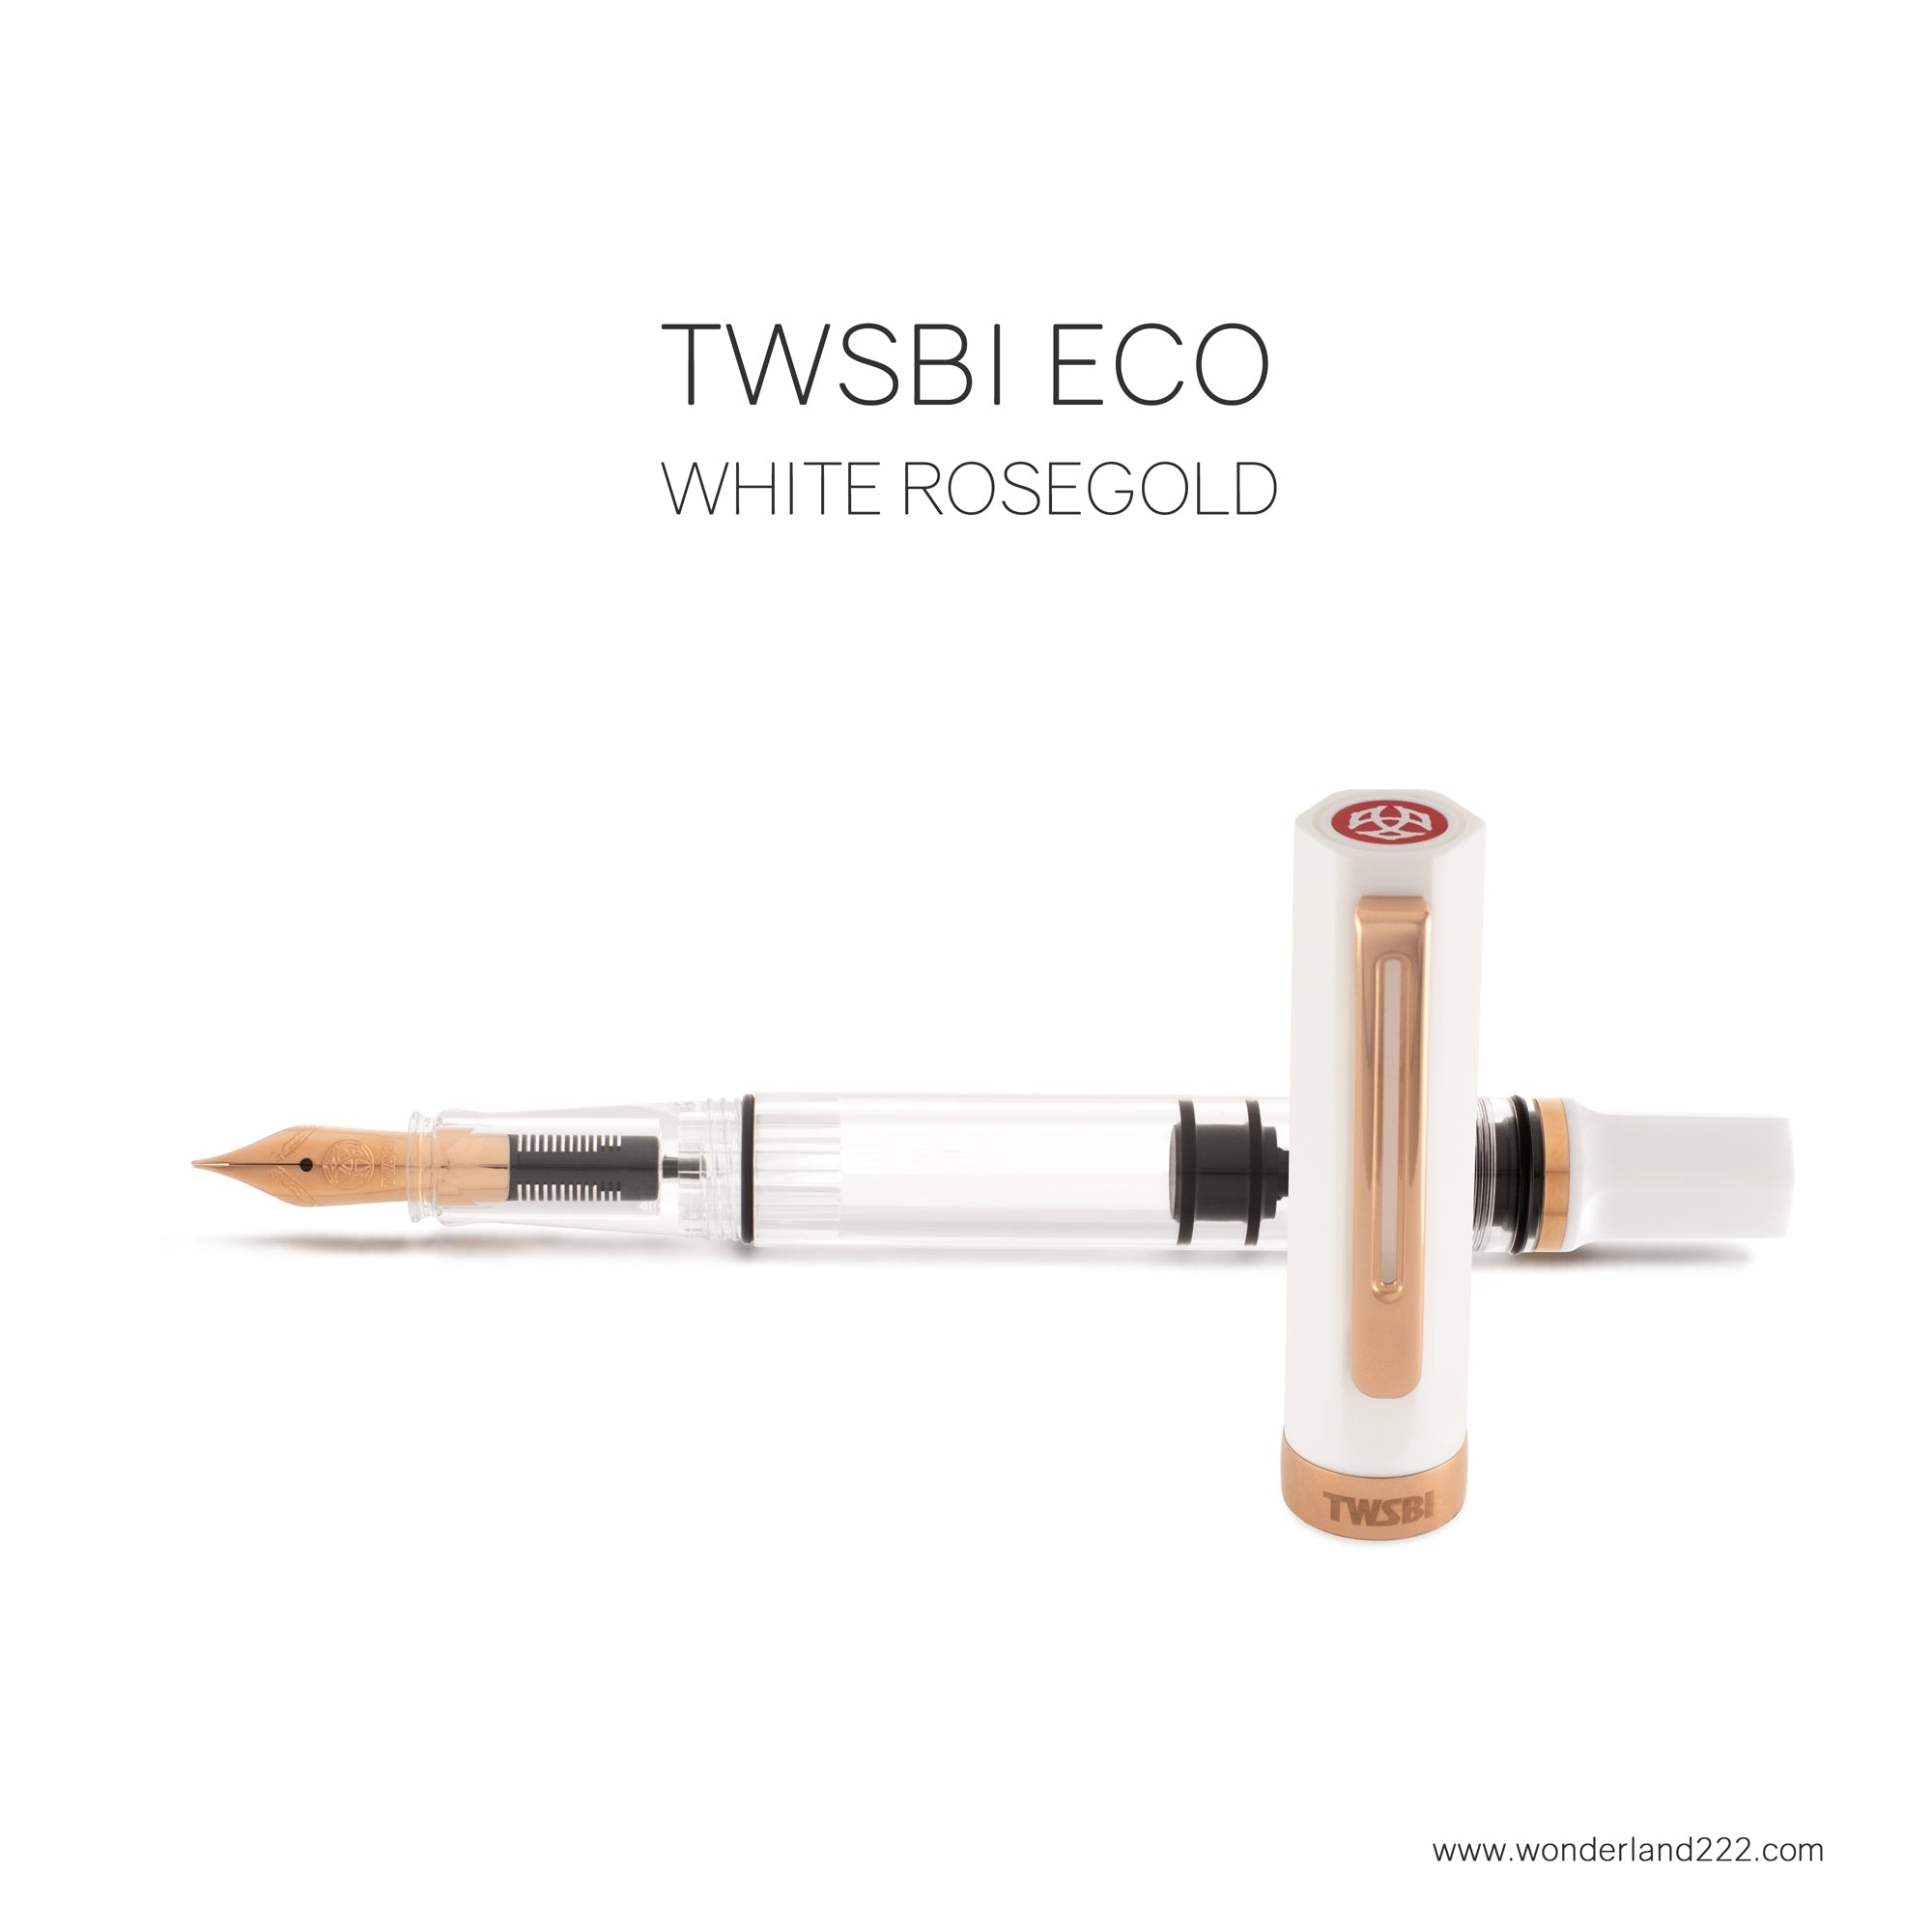 TWSBI - ECO RoseGold